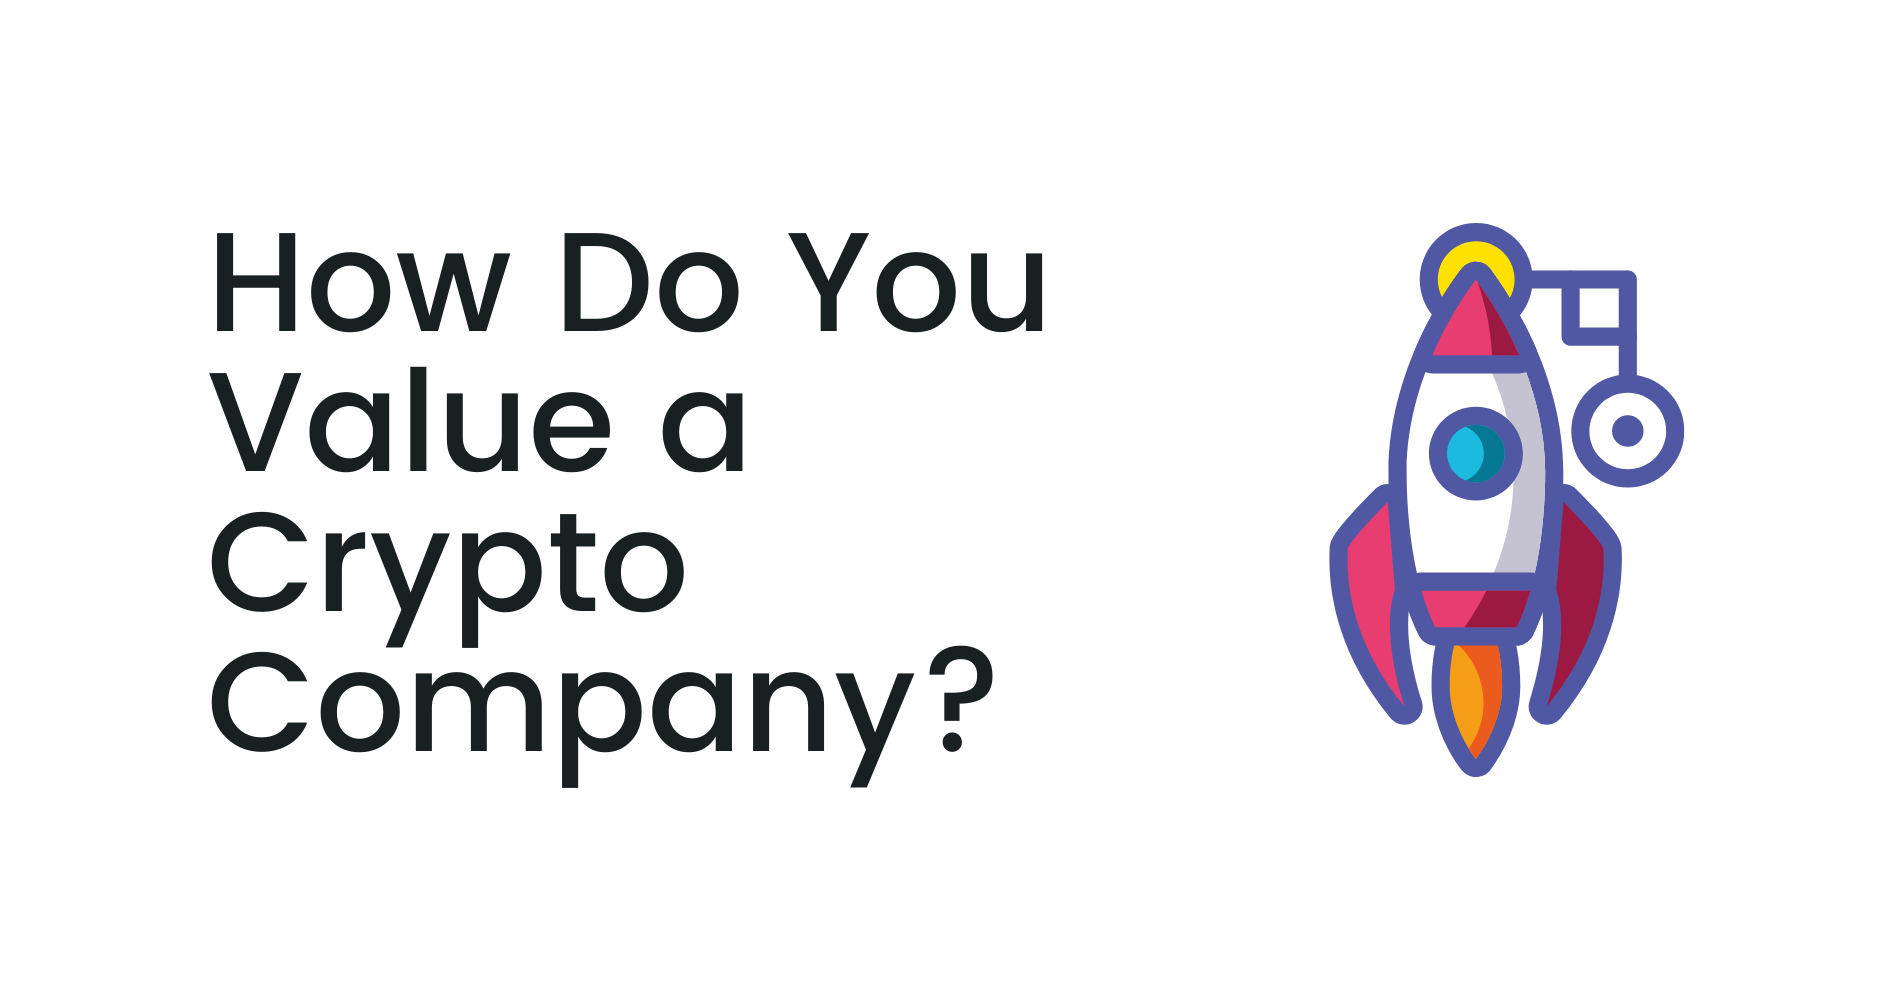 How Do You Value a Crypto Company?